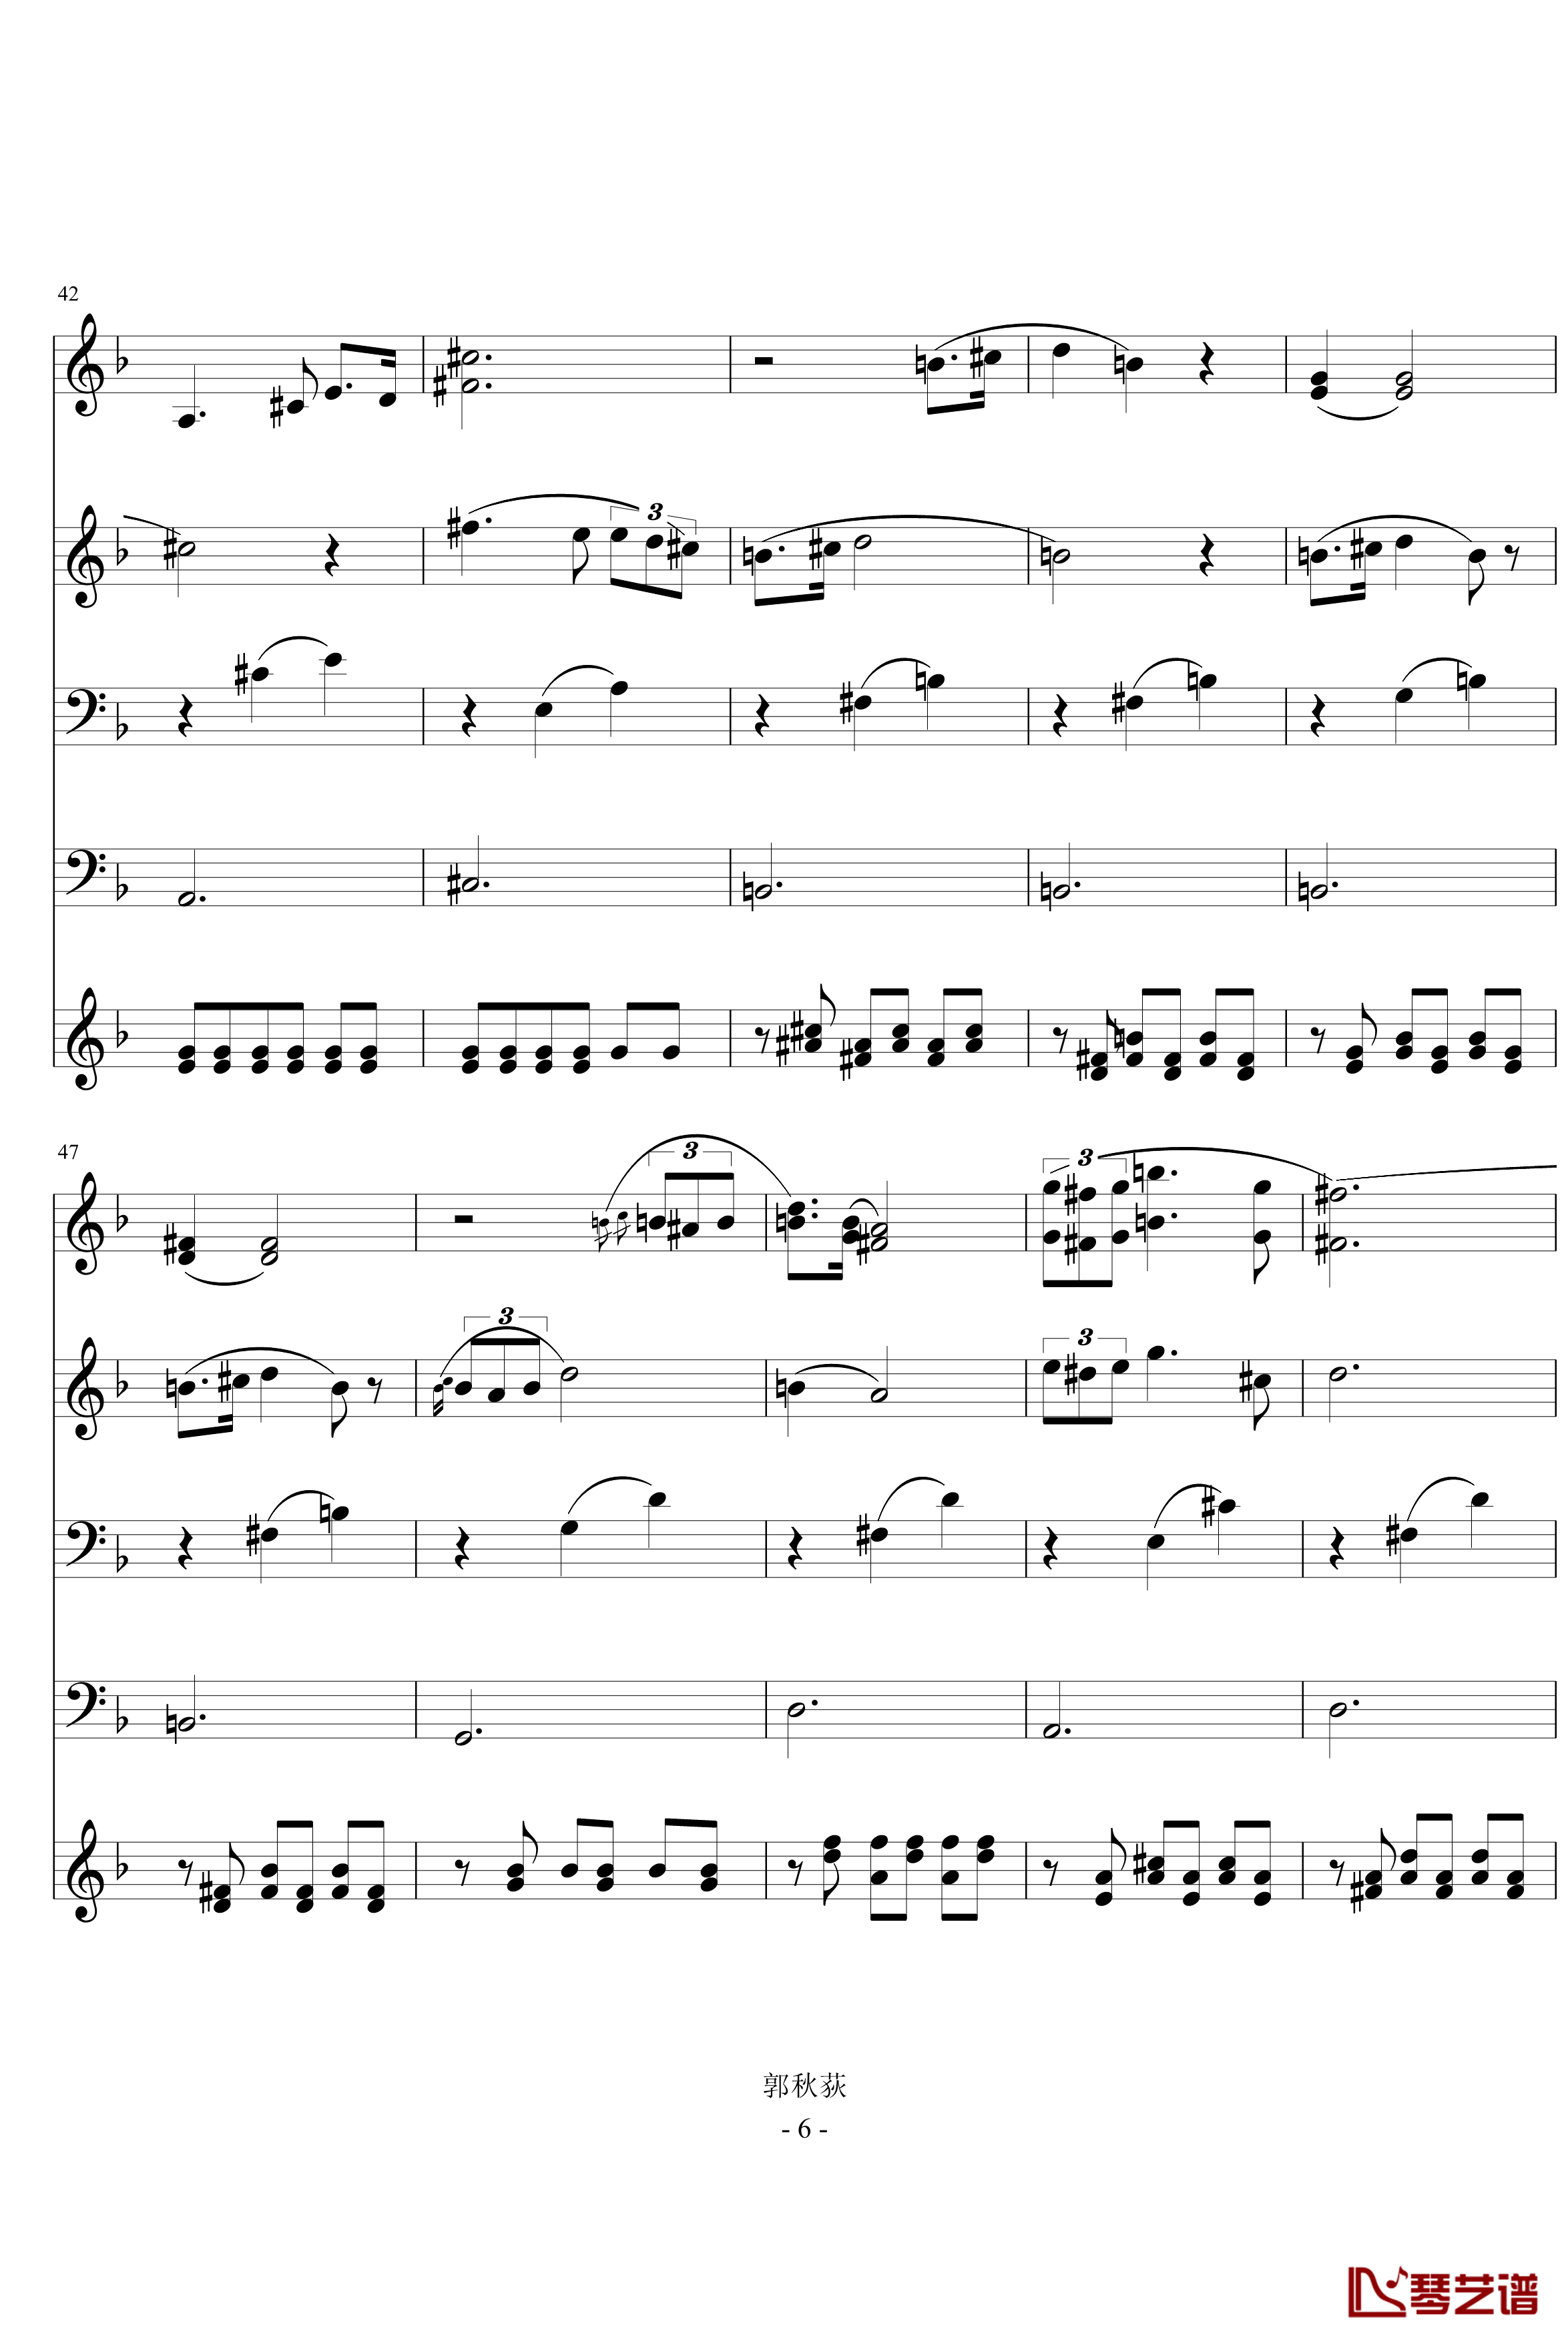 舒伯特小夜曲钢琴谱-管铉乐队版-舒伯特6